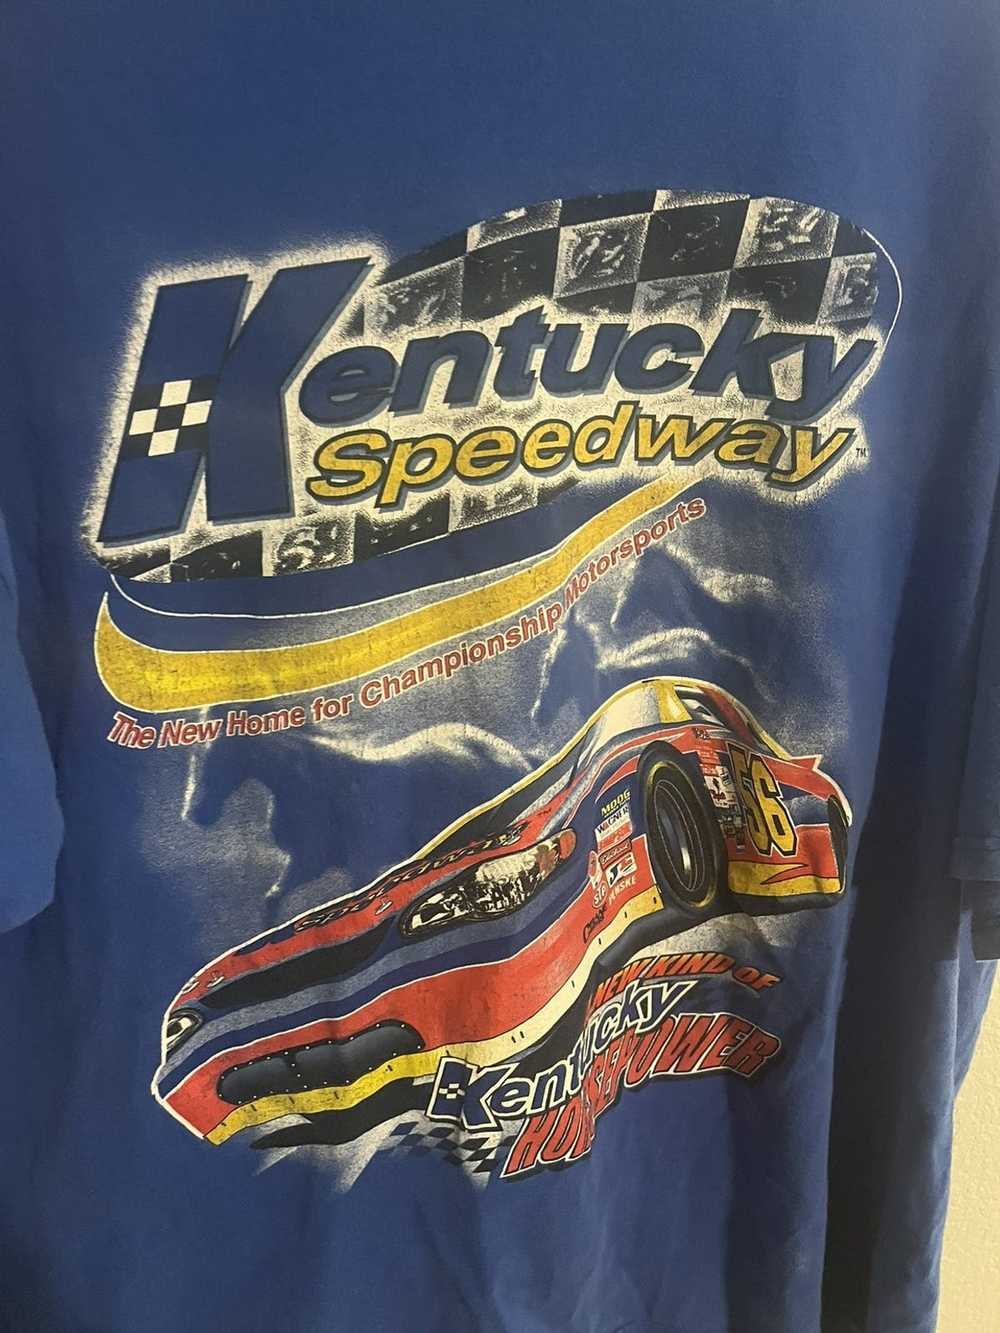 Hanes Kentucky speedway T-shirt - image 1